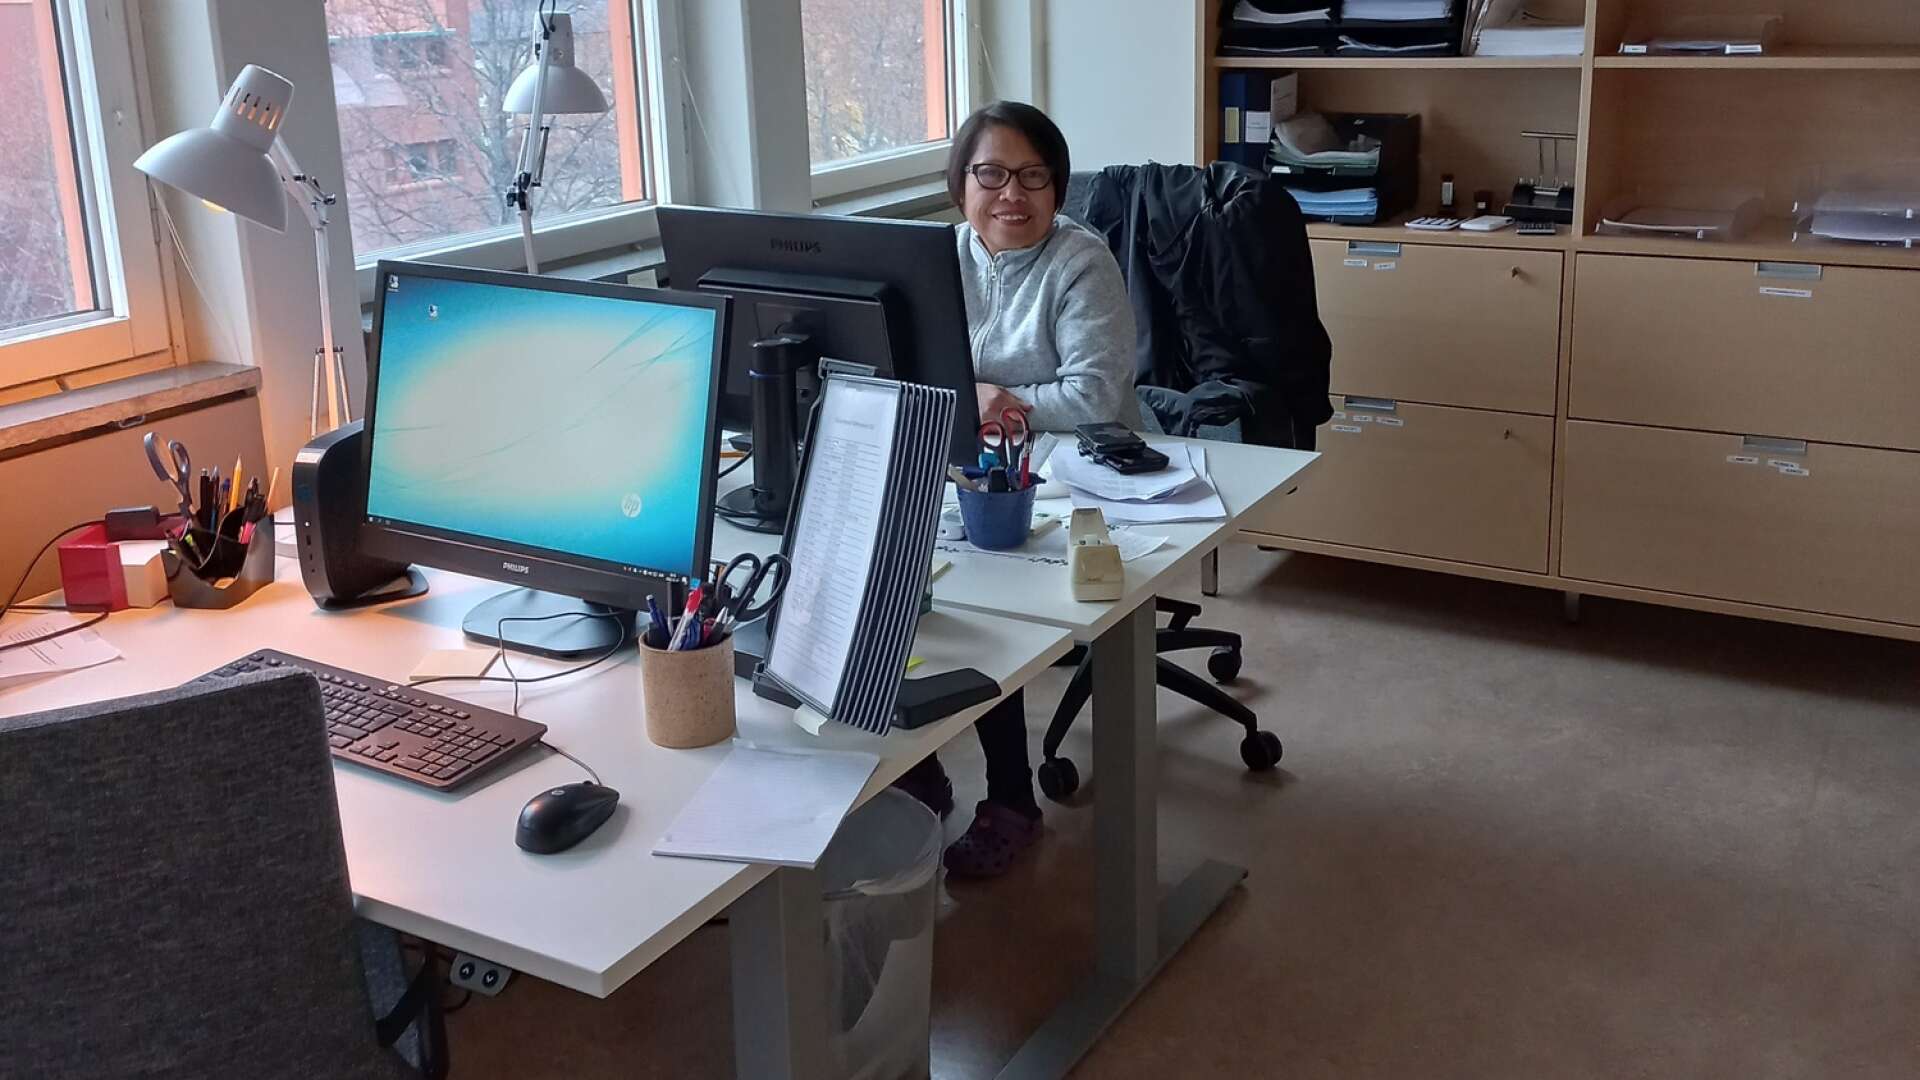 Gilda Lieberg som jobbar inom hemtjänsten i Arvika sitter och dokumenterar vid ett skrivbord som köpts in begagnat.